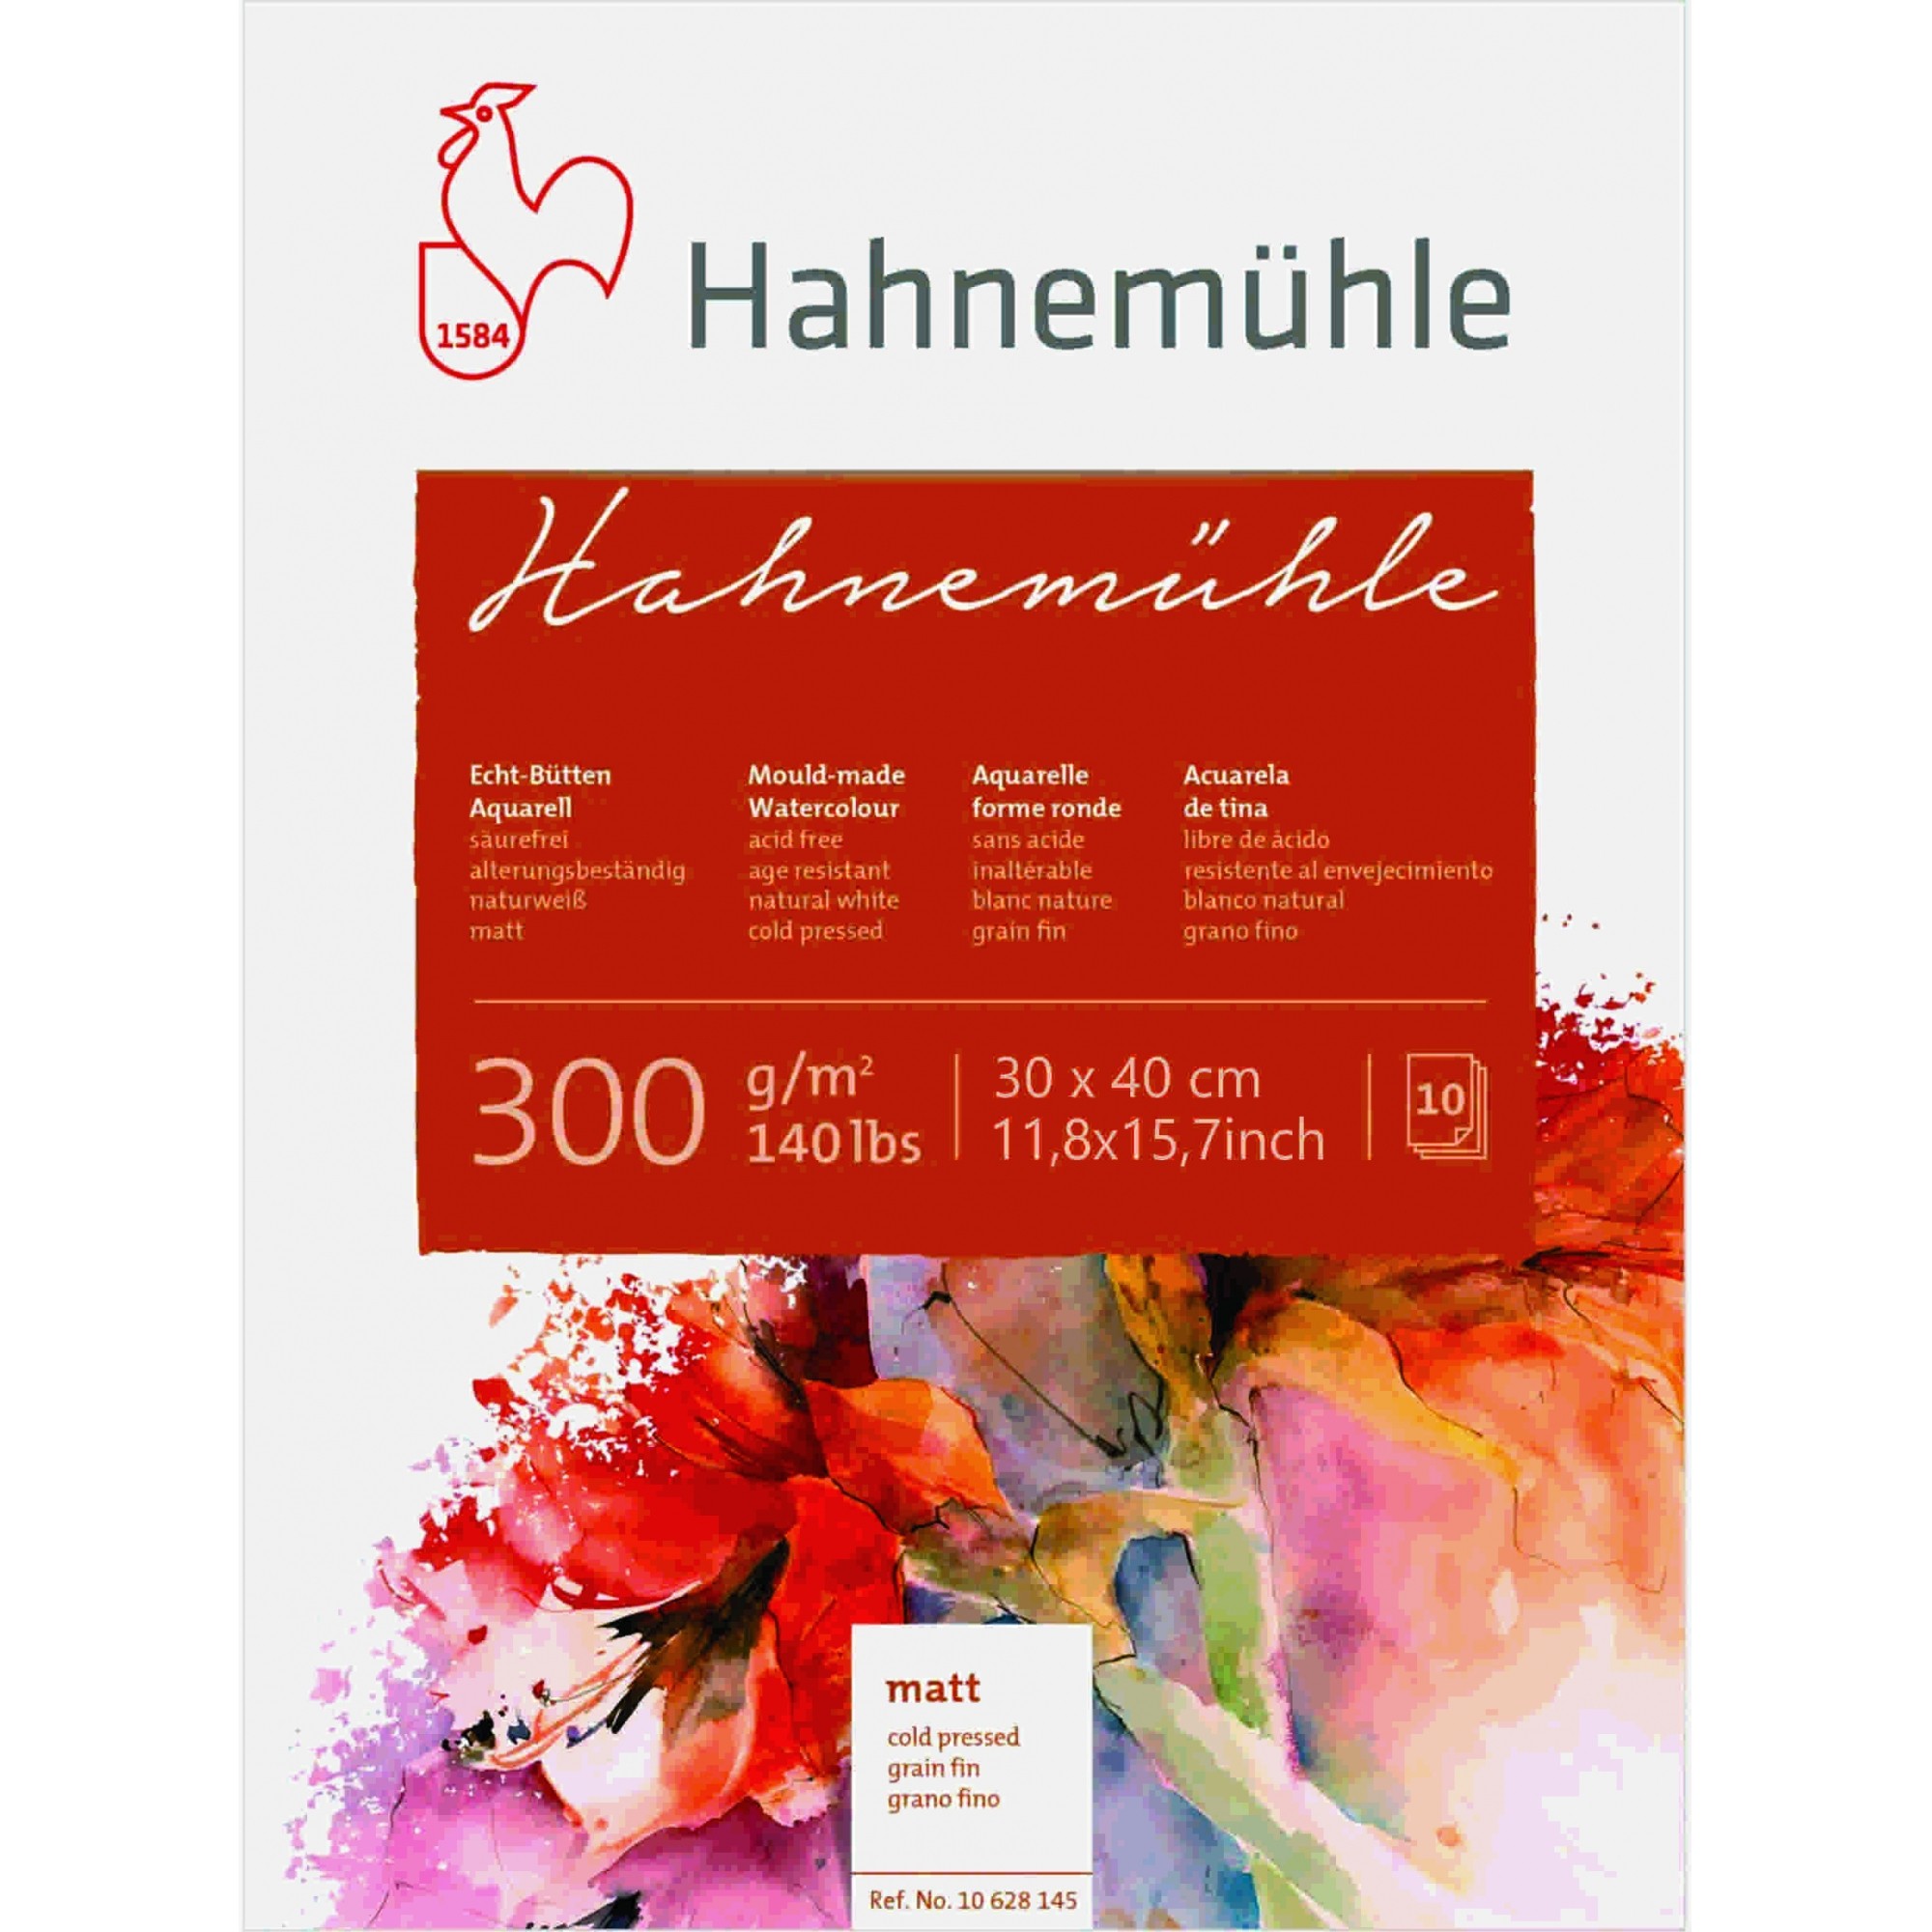 Bloco Aquarela Hahnemuhle 300 g/m² textura fina 30 x 40 cm com 10 fls. Hahnemuhle